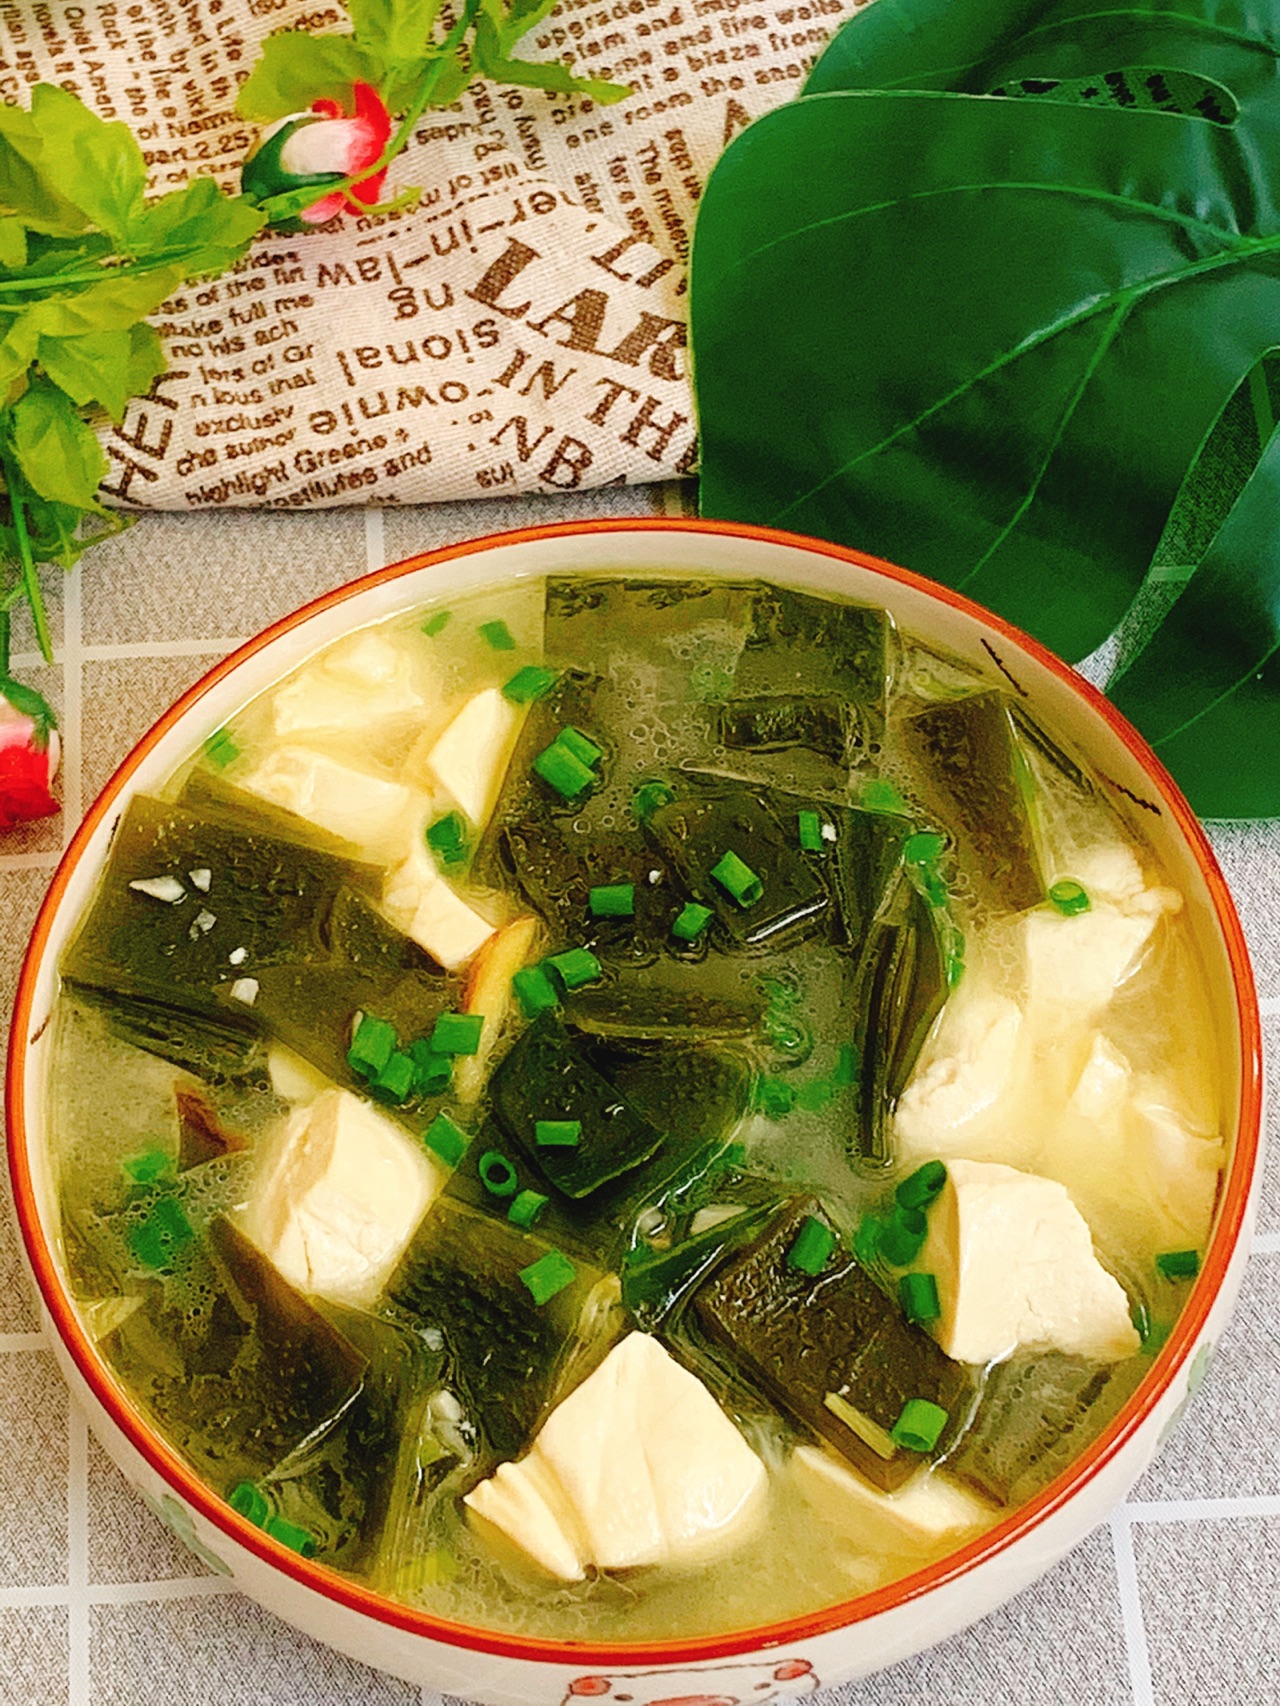 海带豆腐汤的做法_【图解】海带豆腐汤怎么做如何做好吃_海带豆腐汤家常做法大全_h沐浴阳光h_豆果美食